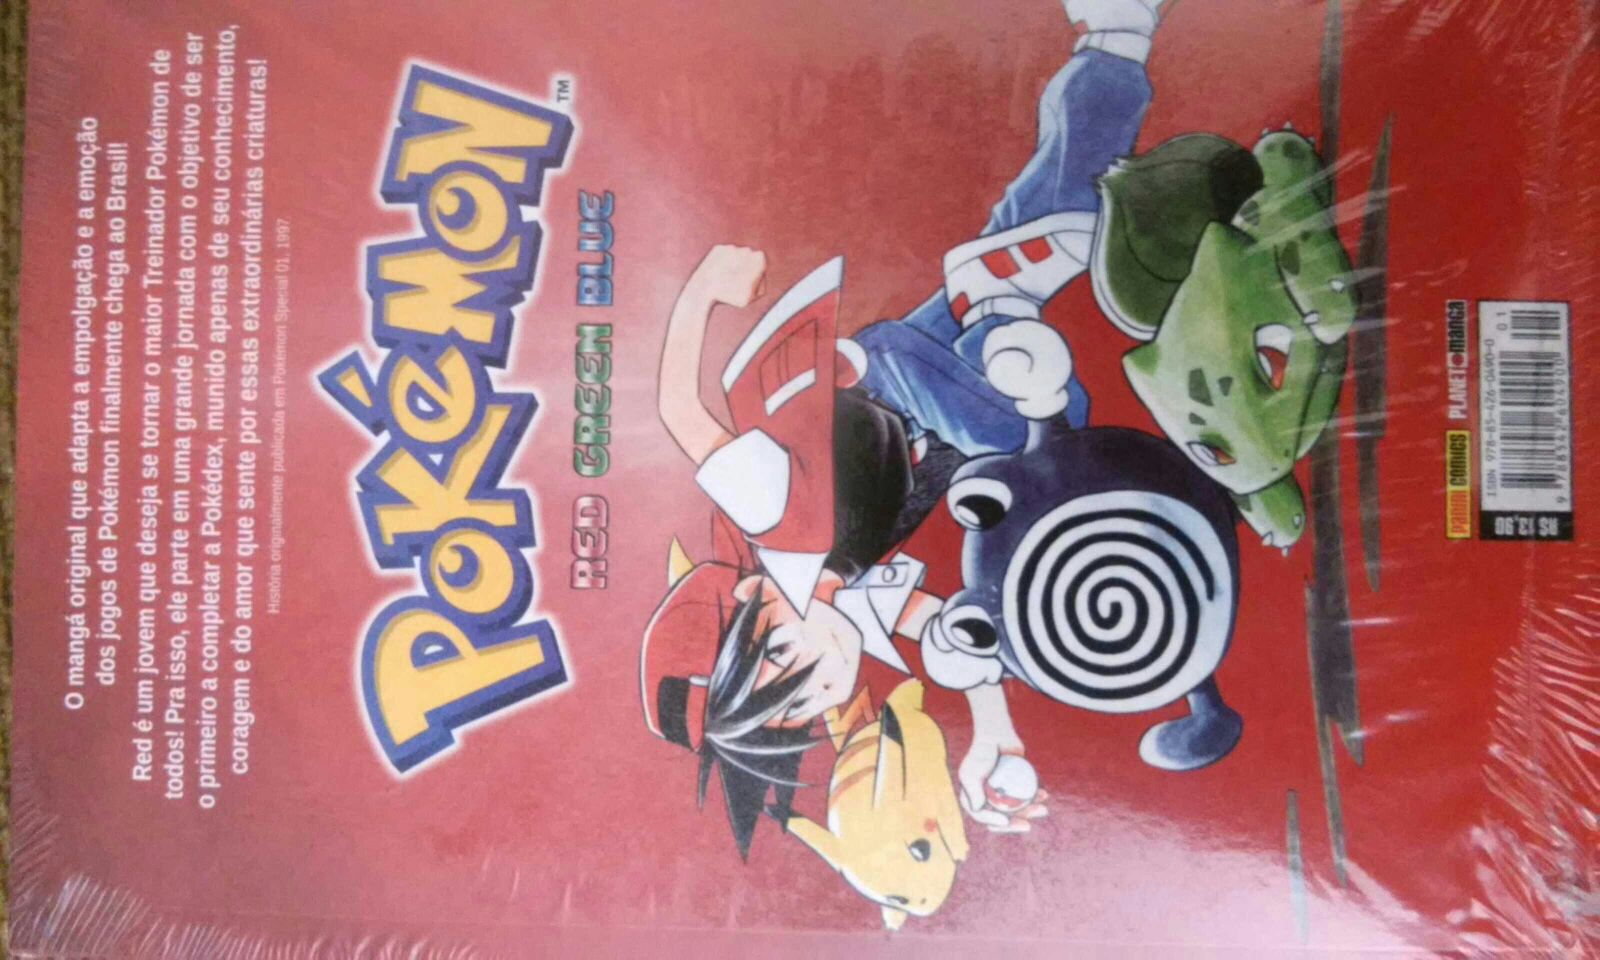 Arco de Pokémon Sword e Shield no mangá Pokémon Adventures ganha primeiras  imagens - Pokémothim